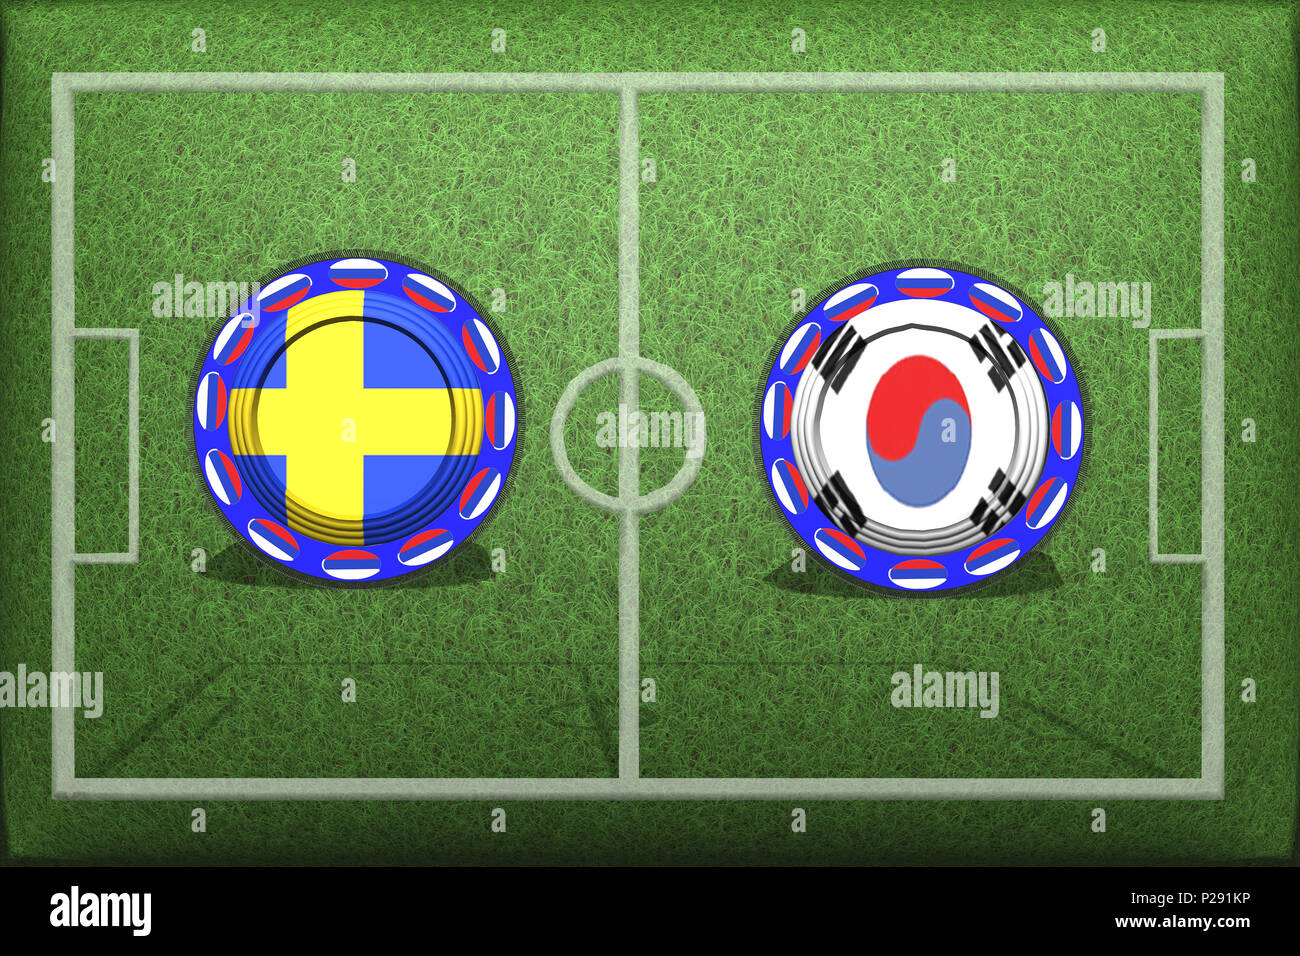 Football, Coupe du Monde 2018, Groupe F Jeu, Suède - Corée du Sud, le lundi 18 juin, un bouton avec les drapeaux nationaux sur l'herbe verte. Banque D'Images